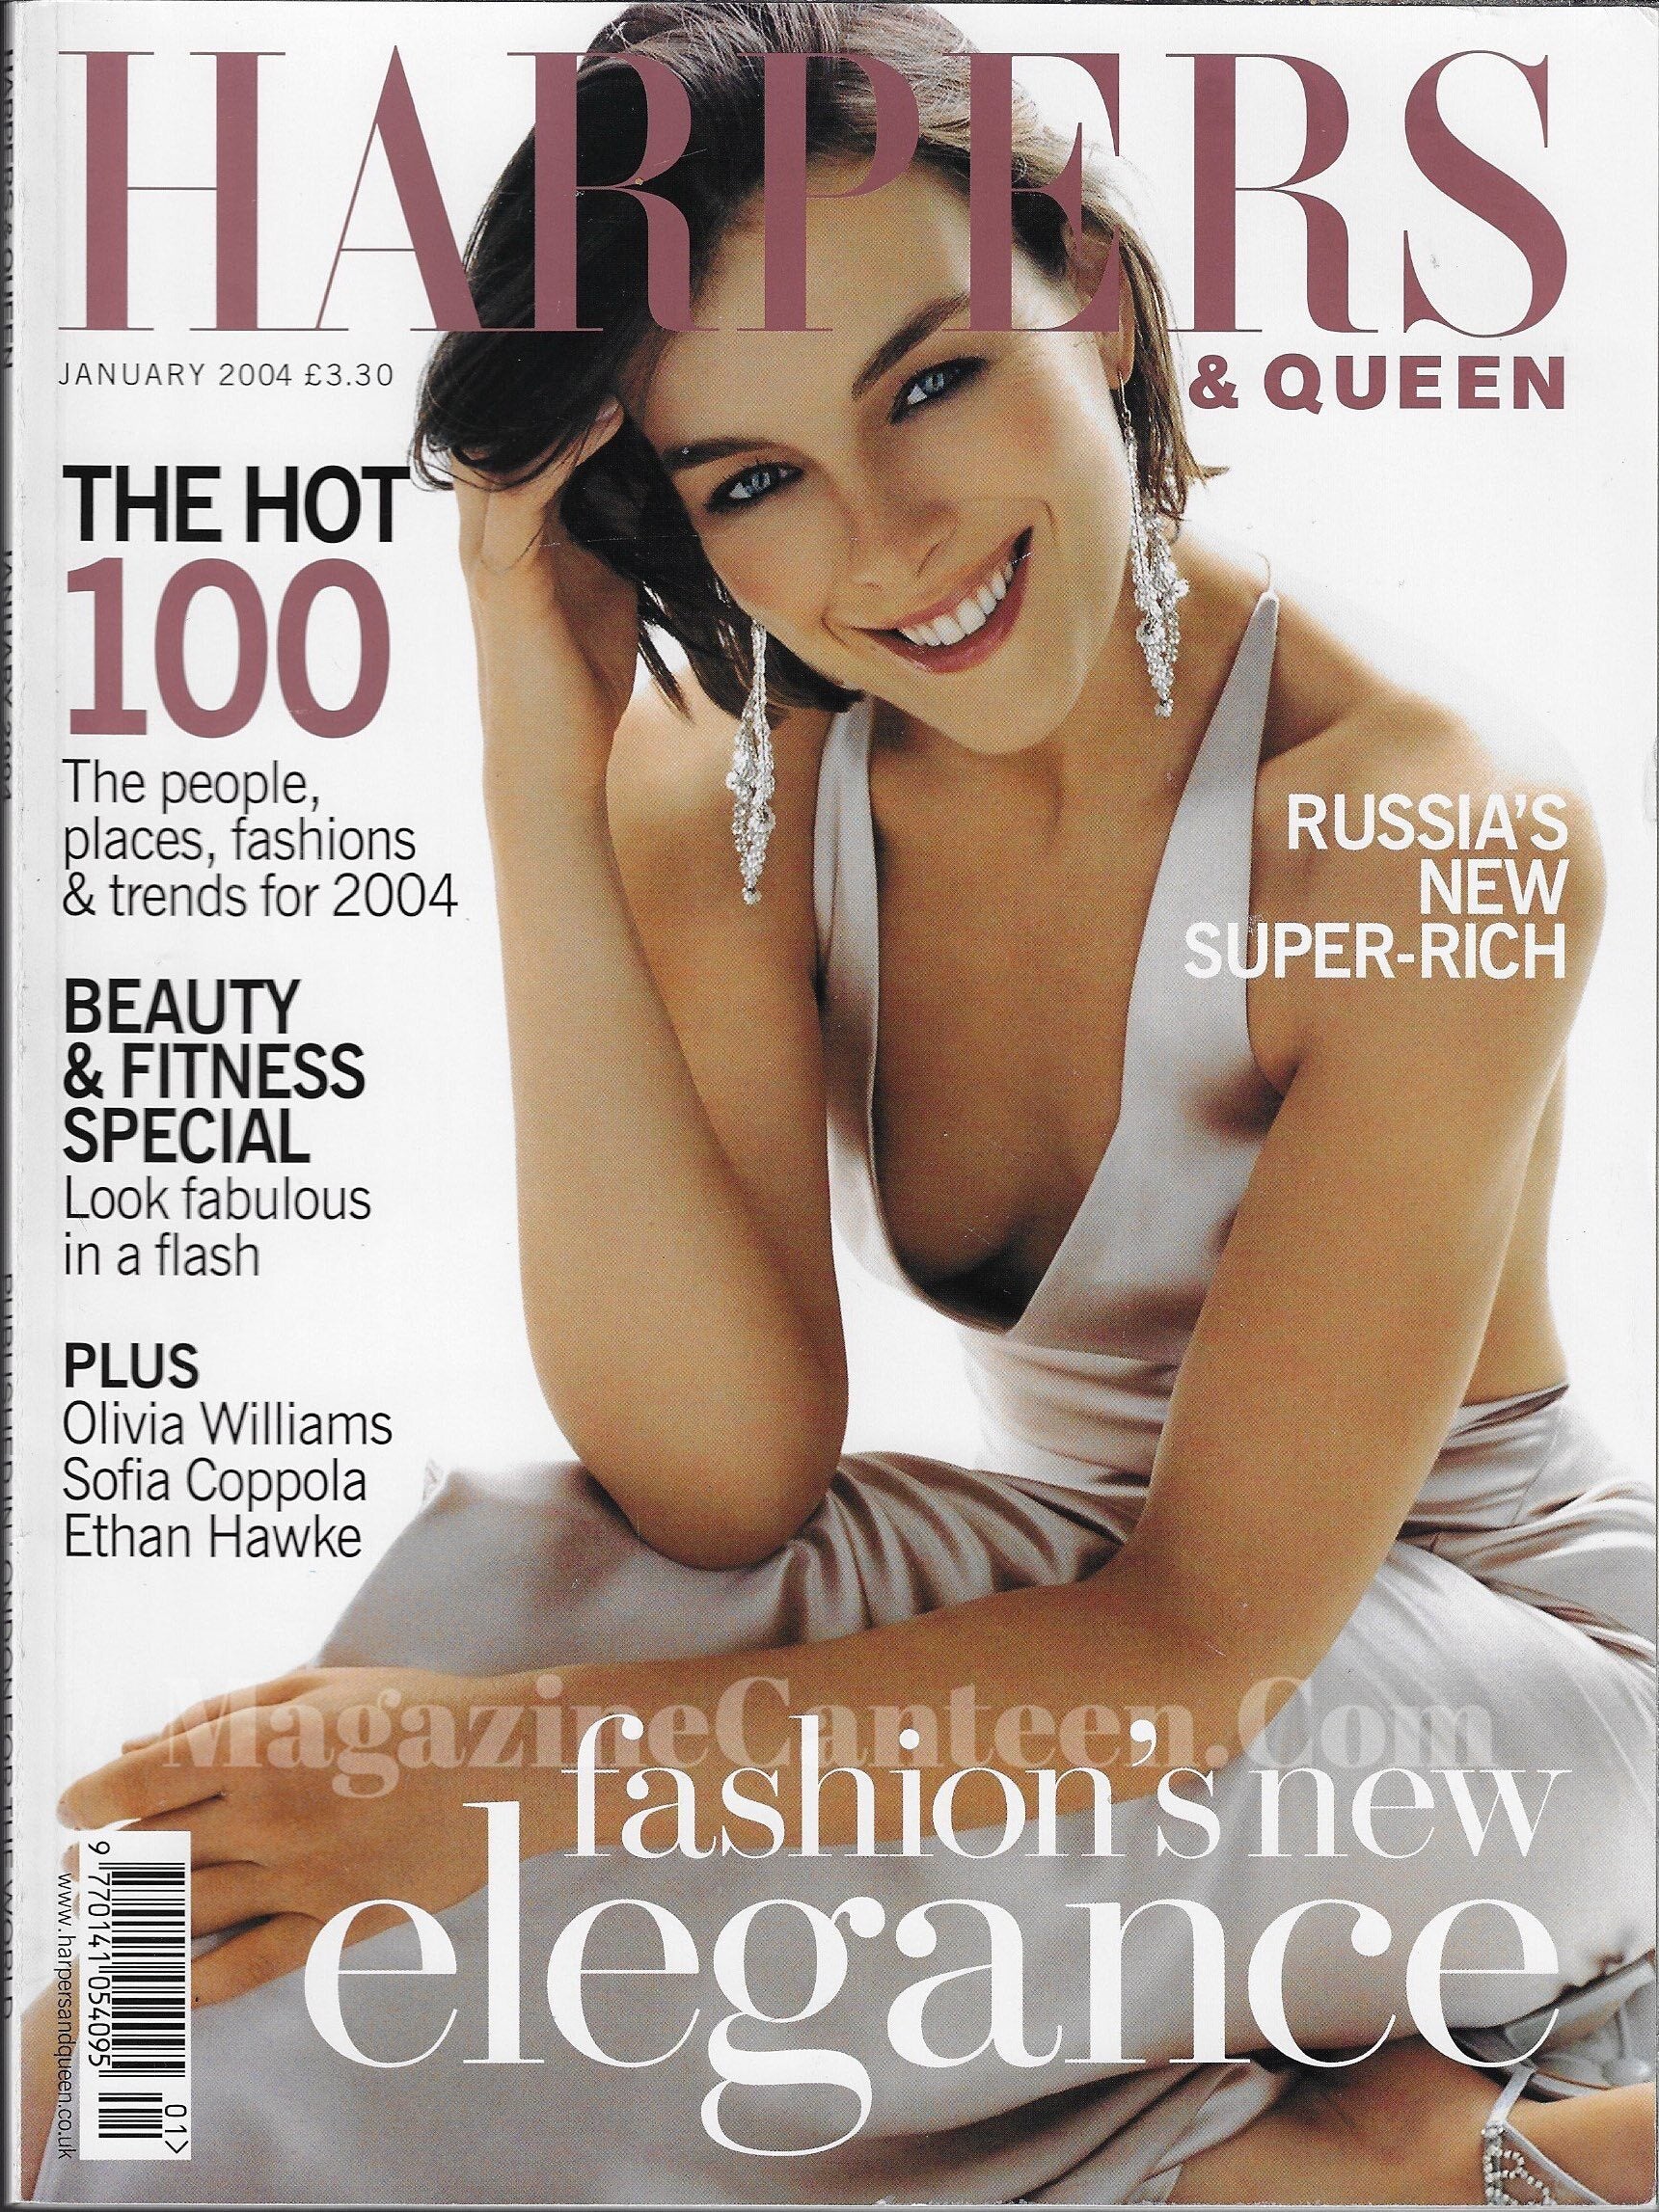 Harpers & Queen Magazine - Olivia Williams